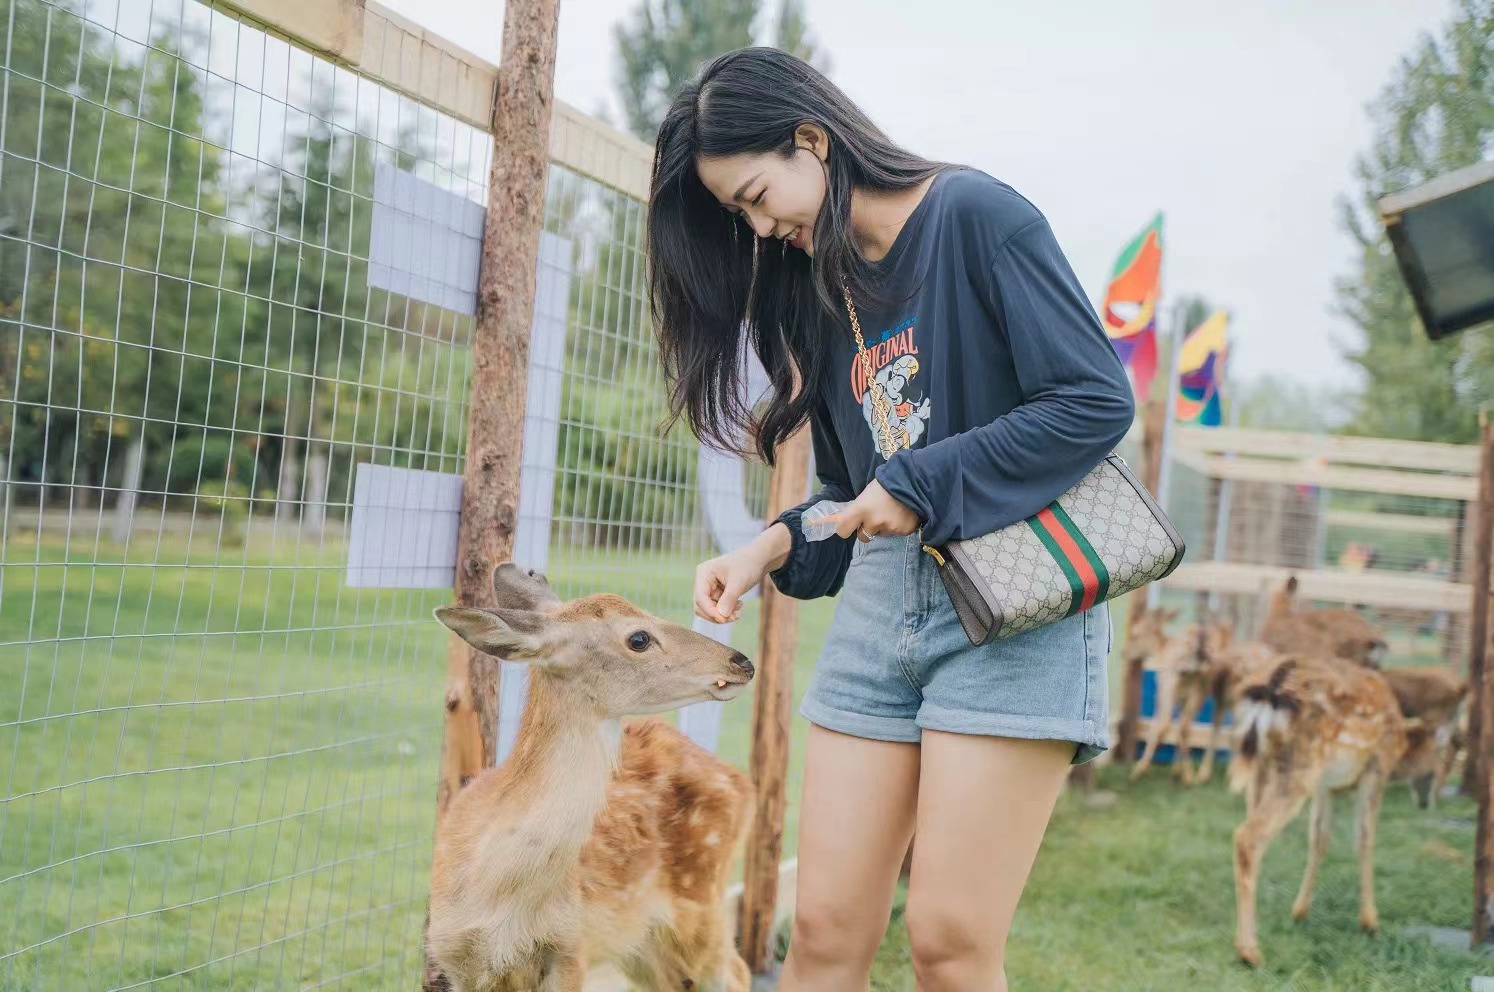 Top 10 Events in Haikou This Week: Blues, Feeding Deer & More